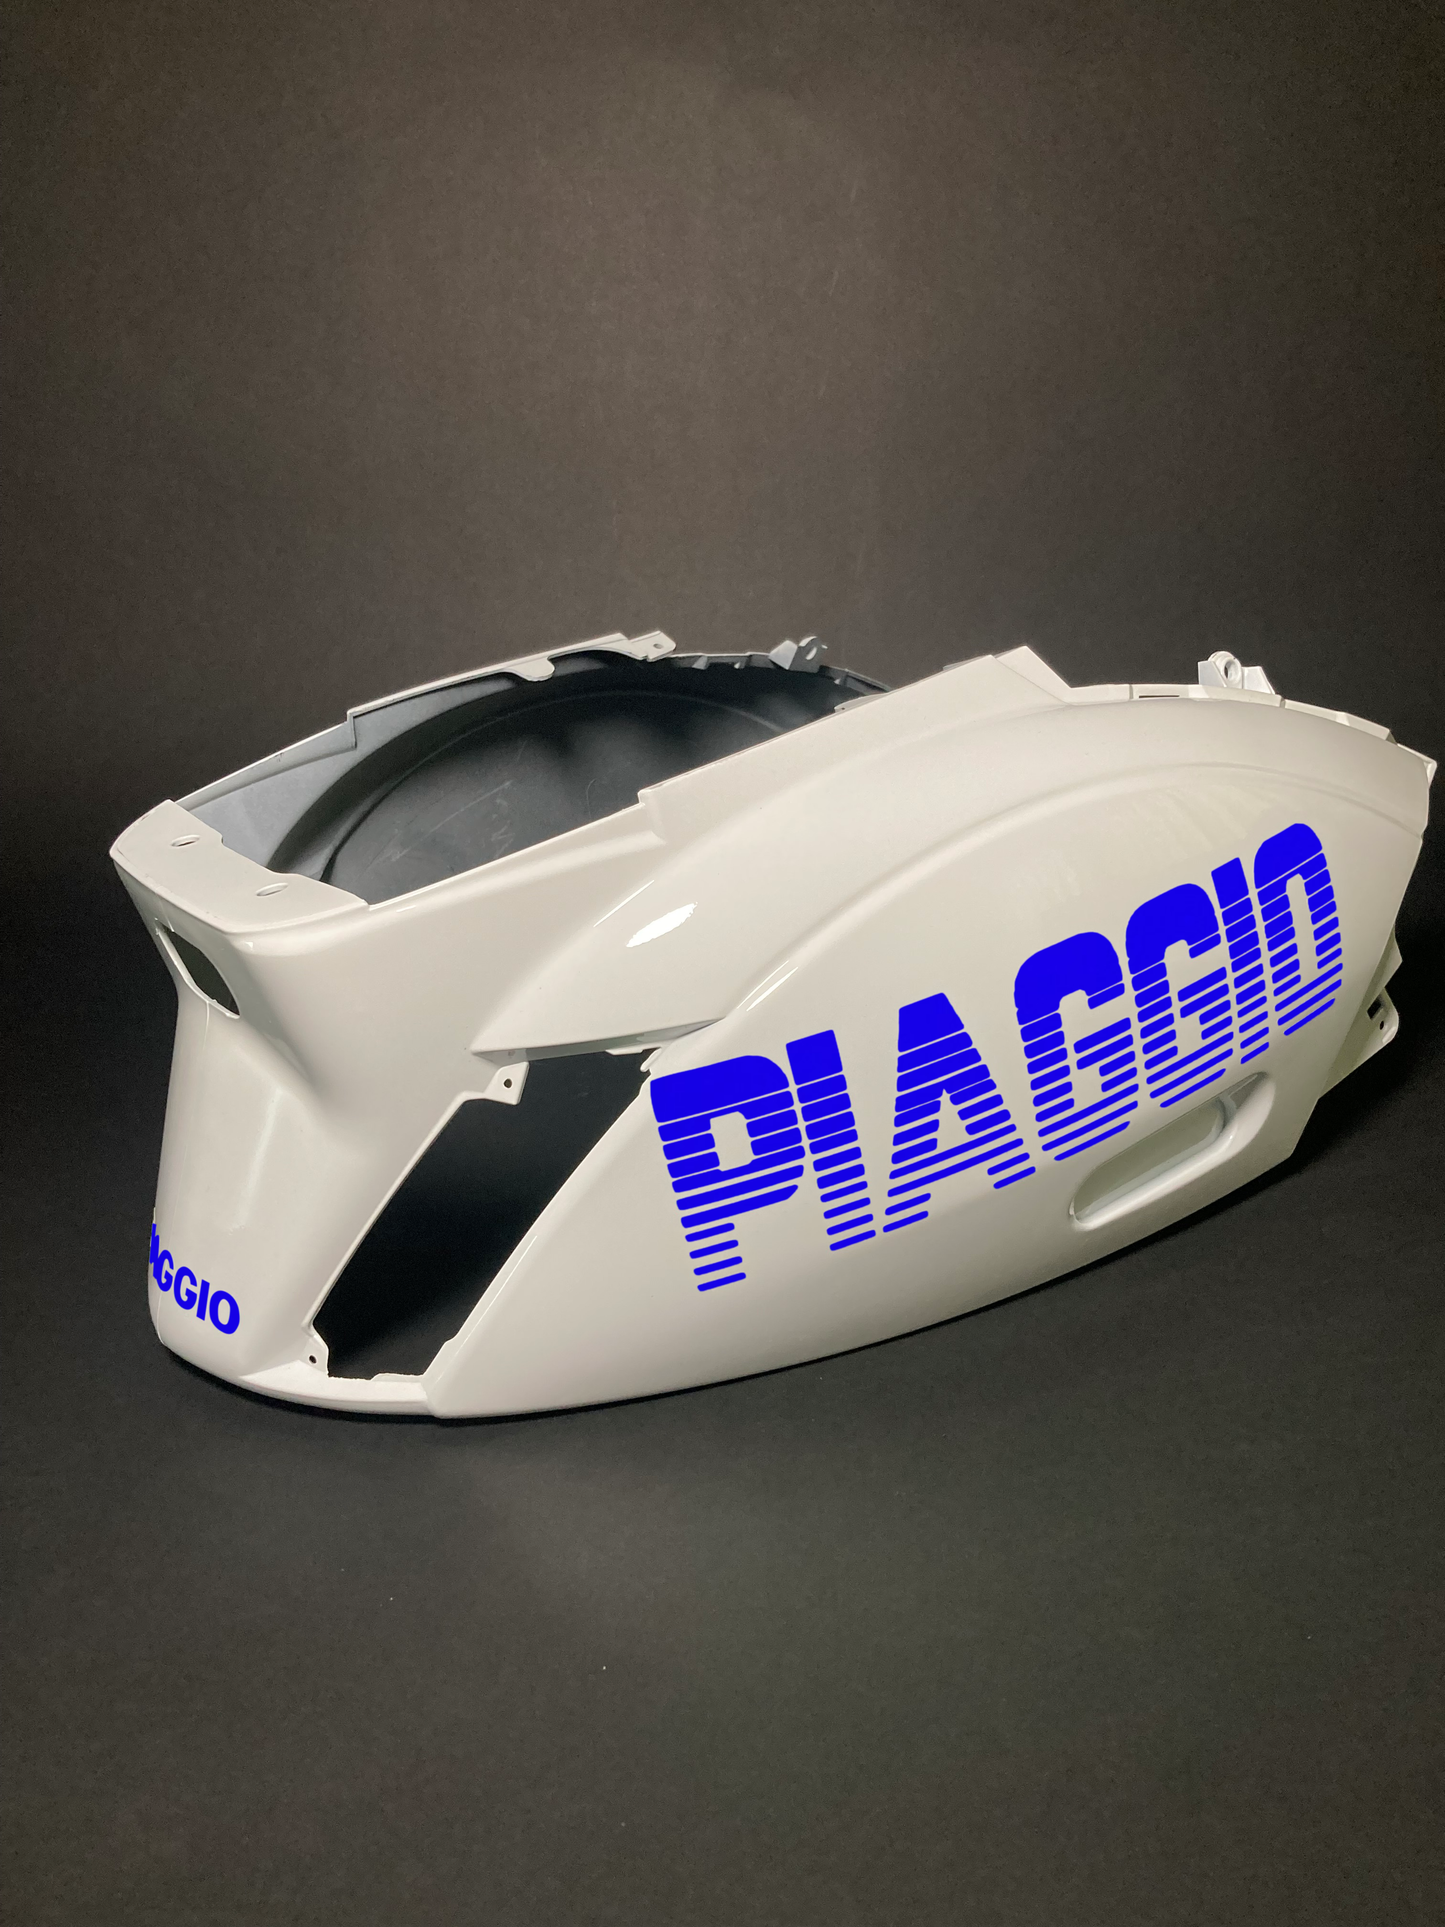 Reißverschluss Piaggio | Blau